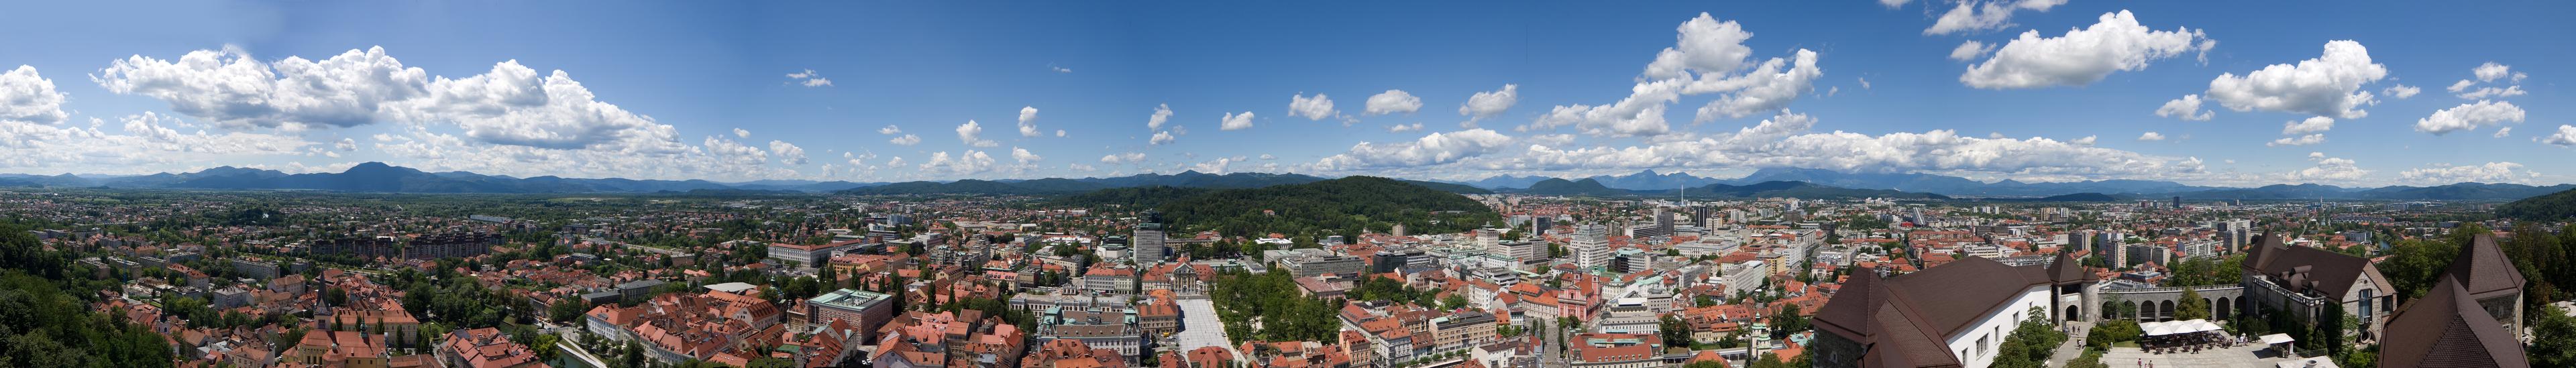 Banner image for Ljubljana on GigsGuide